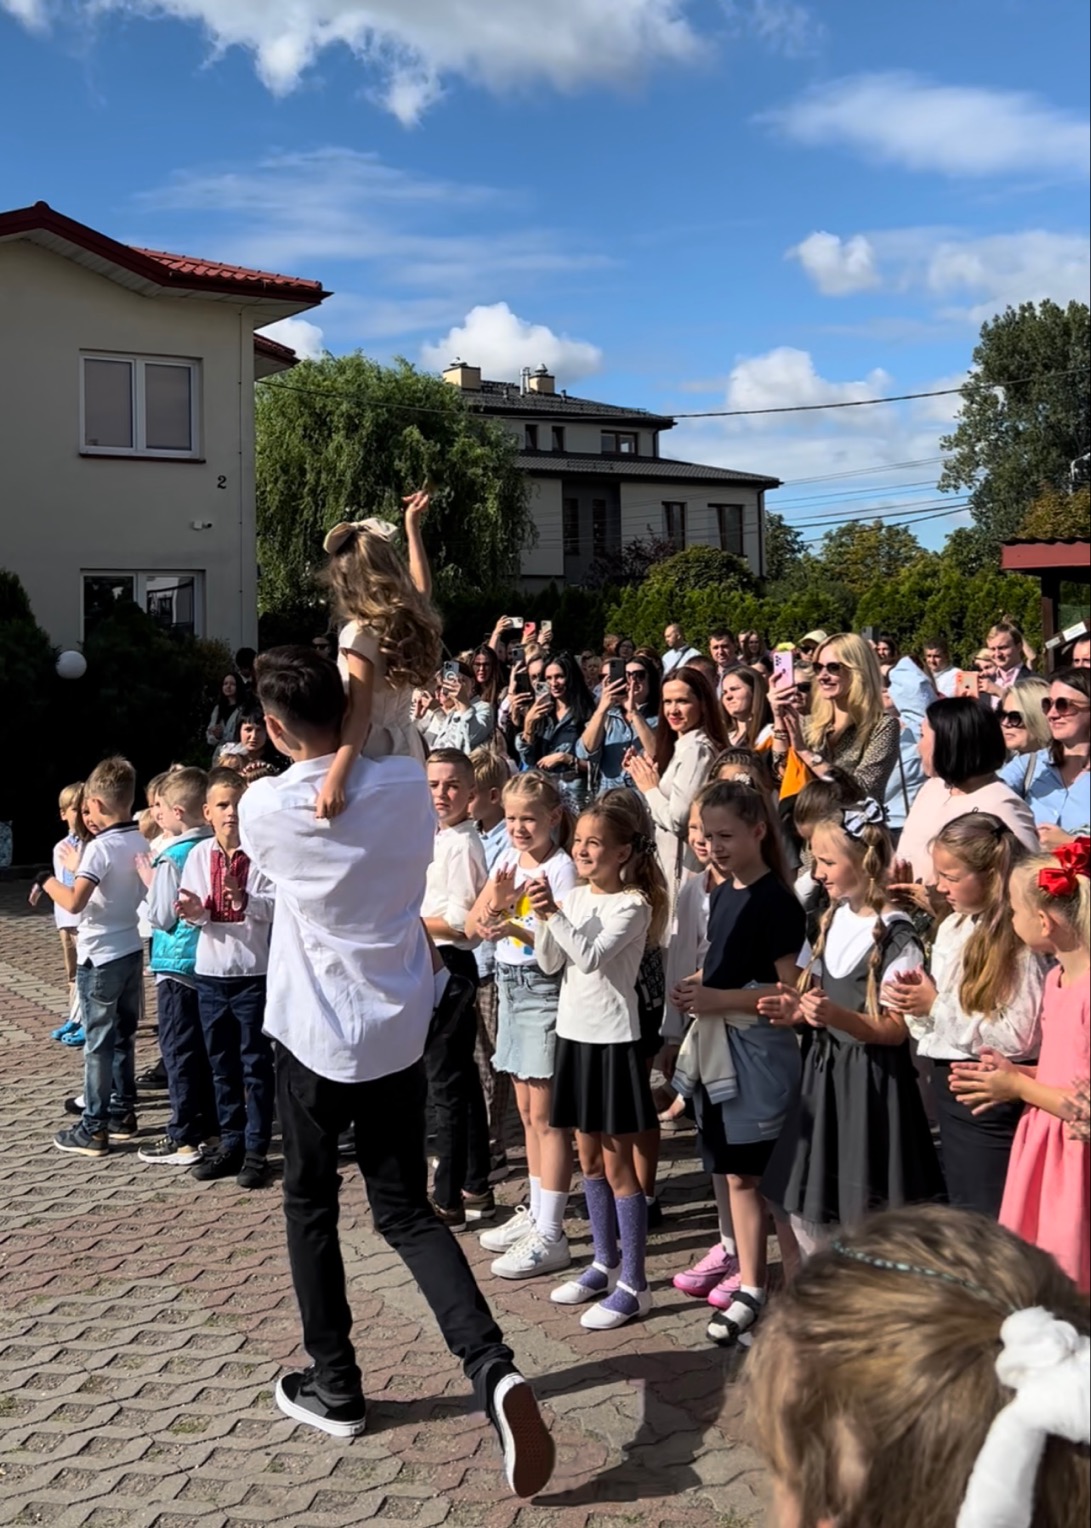 Відбулось урочисте відкриття школи для українських дітей у Варшаві за іціативи ECCU та за юридичного партнерства EUCON